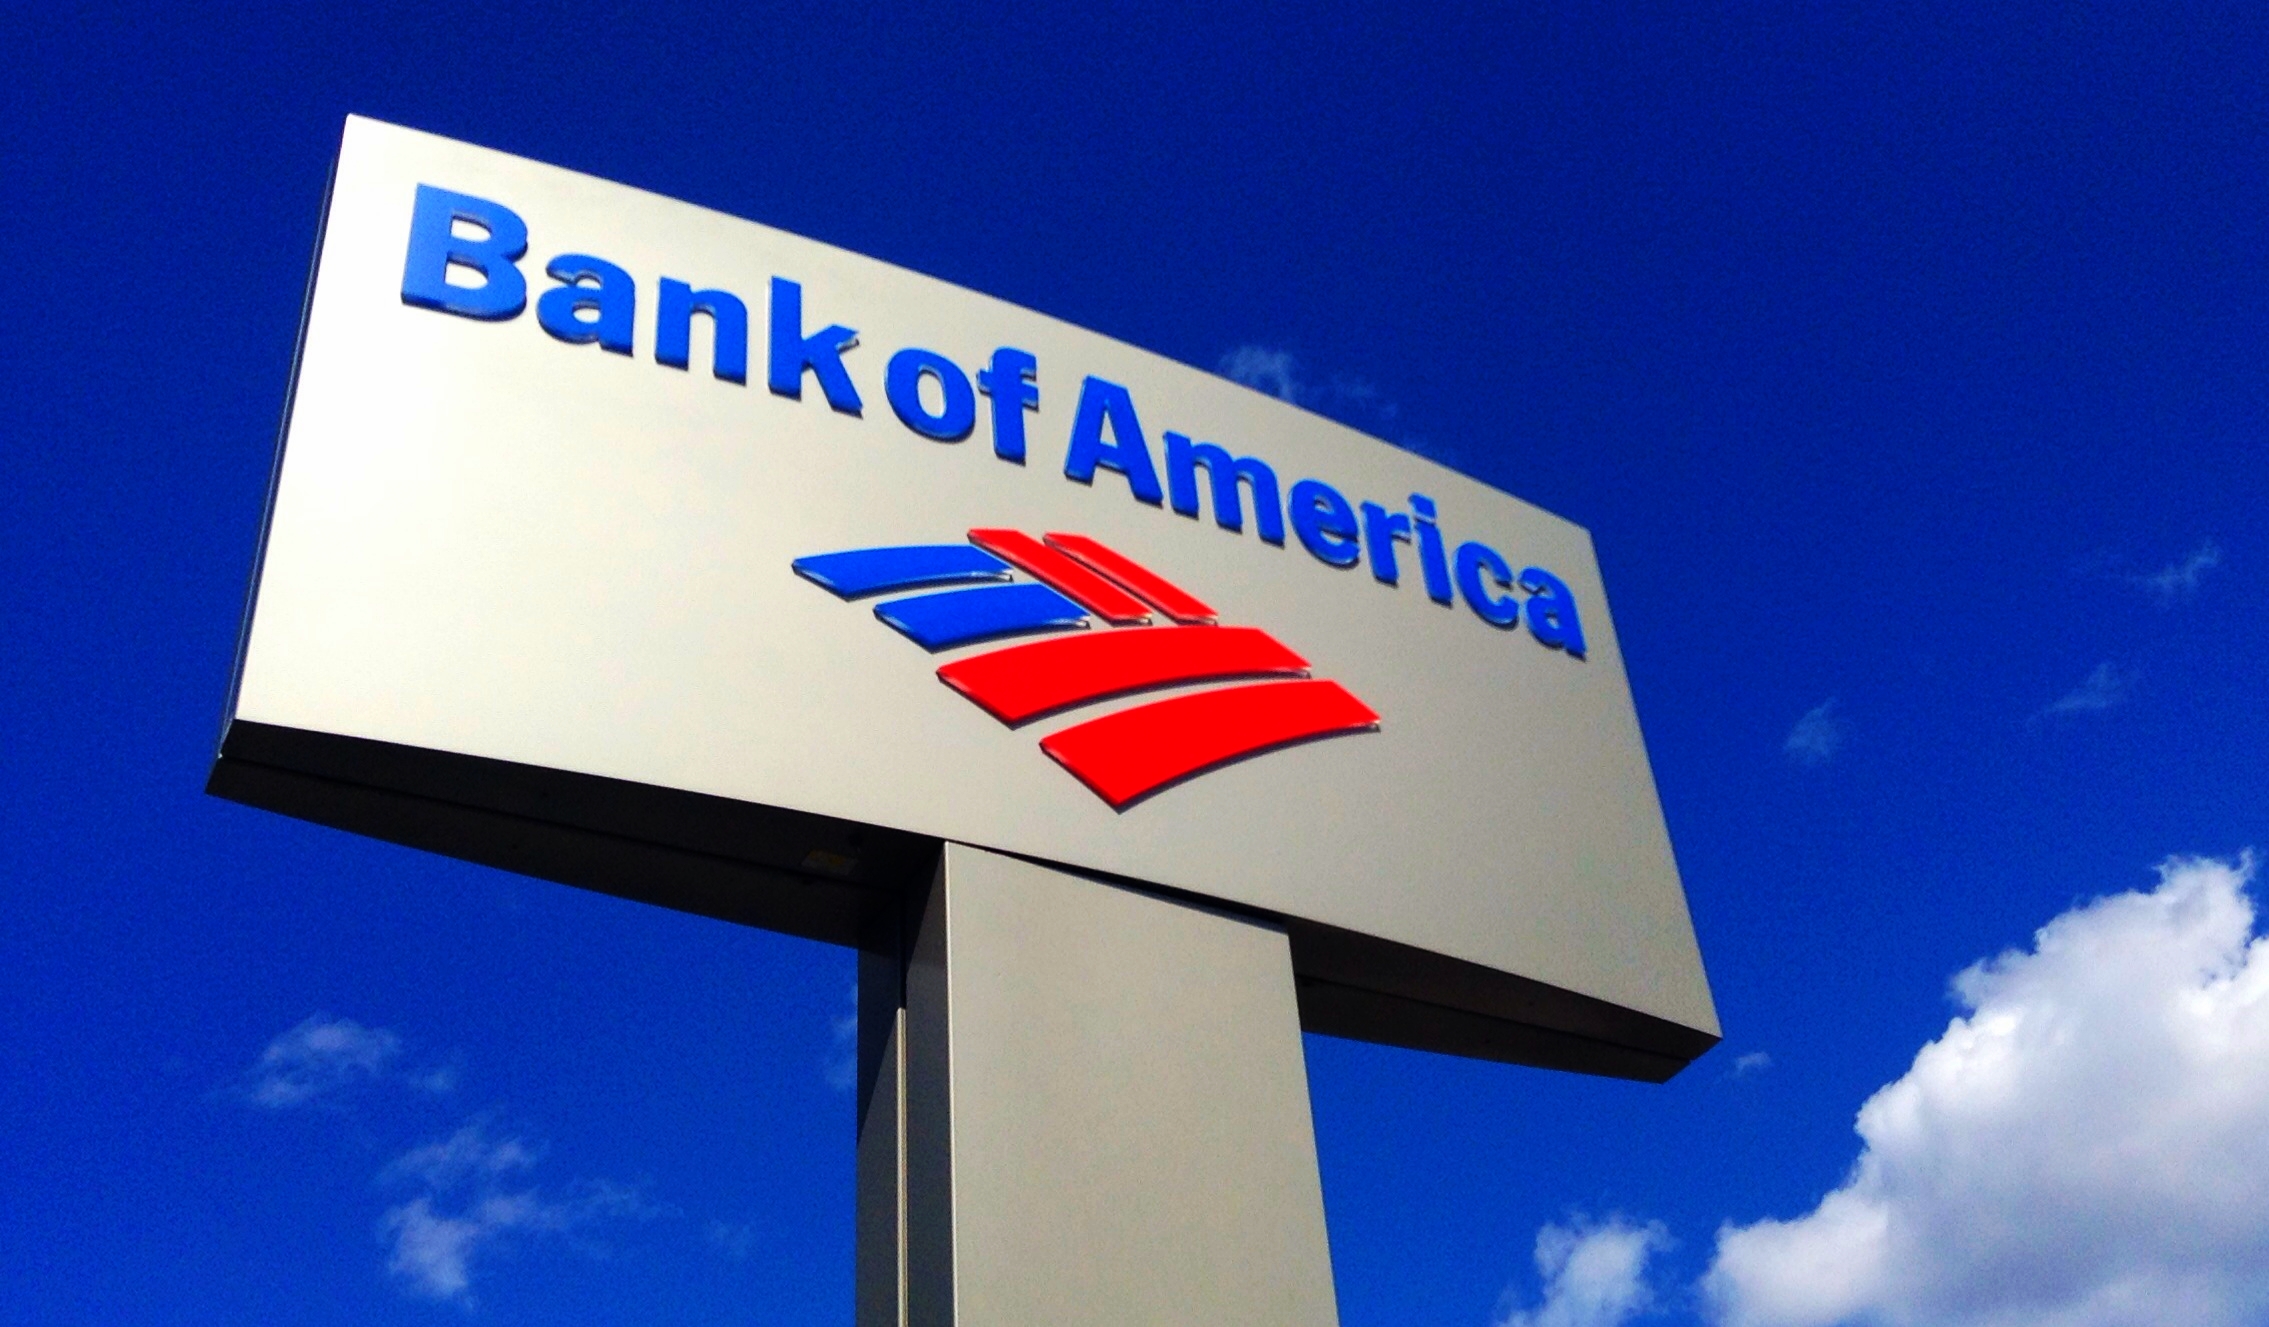 Бэнк оф сайт. Bank of America. Bank of America логотип. Банк оф Америка США. Логотип банка банк оф Америка.